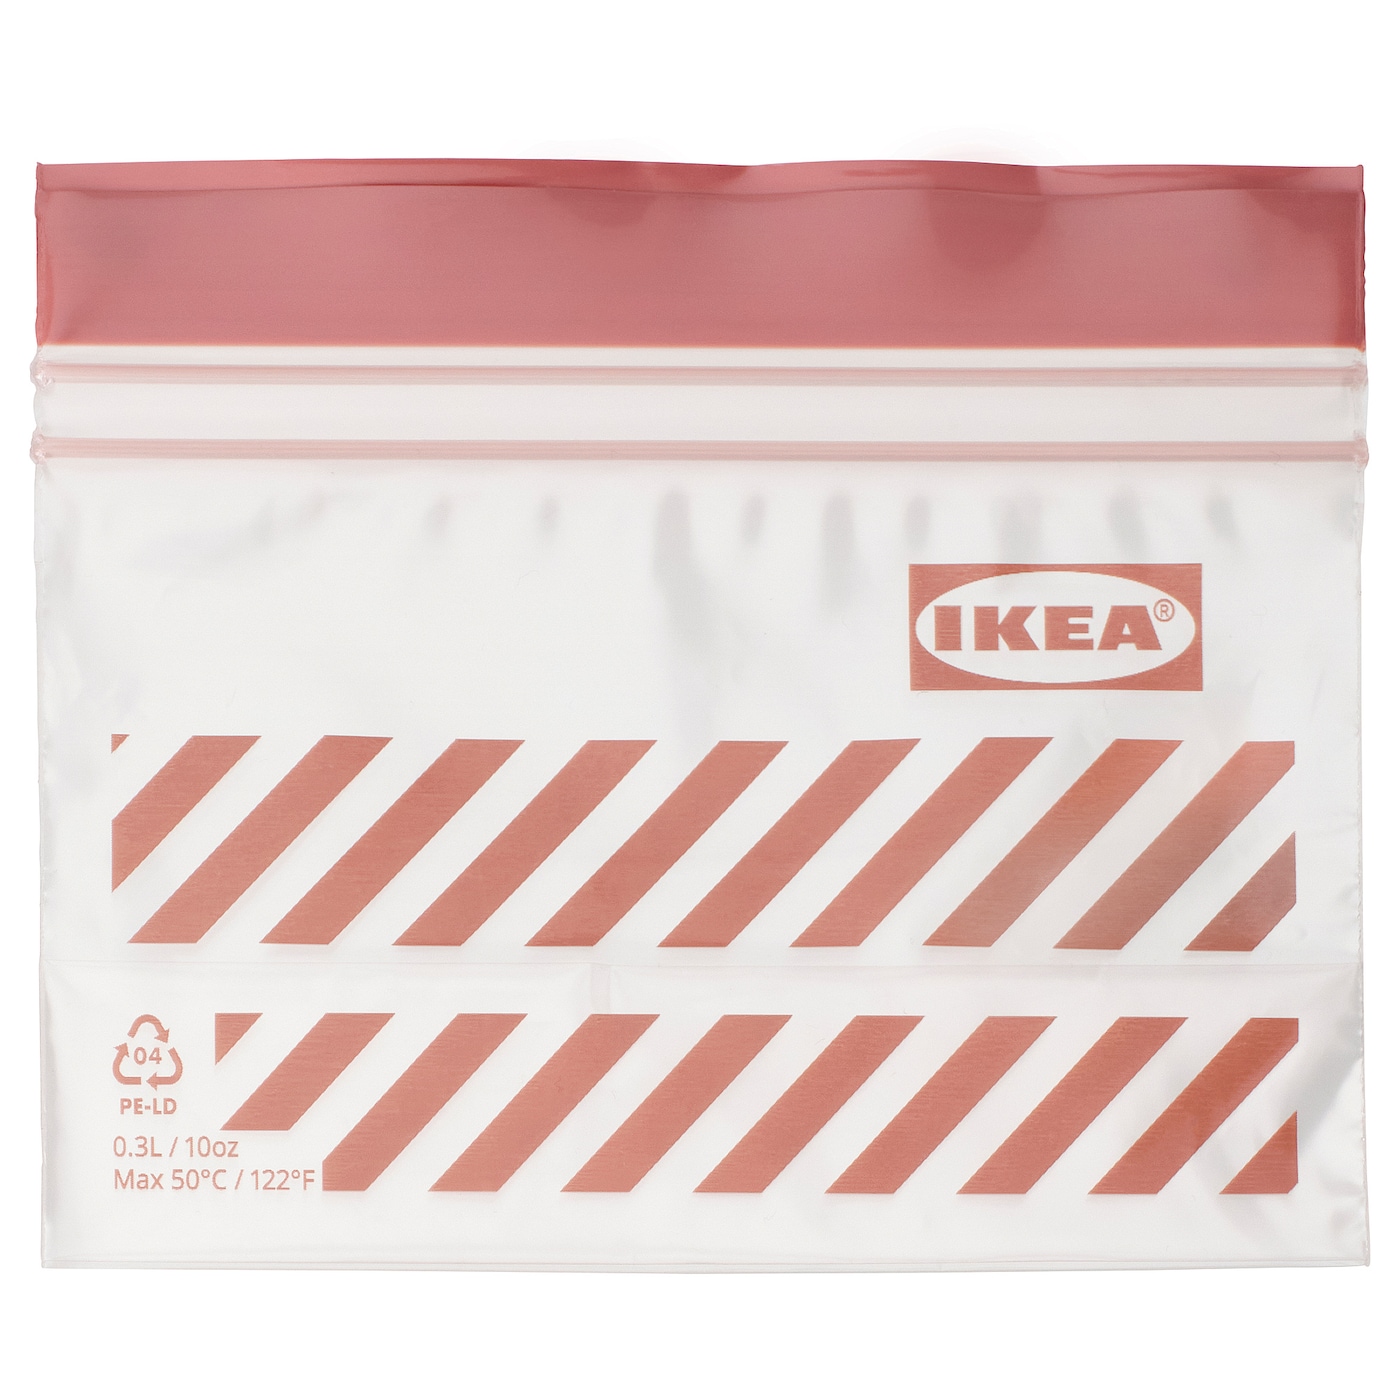 Пакет для продуктов, 25 шт. - IKEA ISTAD, 0.3 л, розовый, ИСТАД ИКЕА